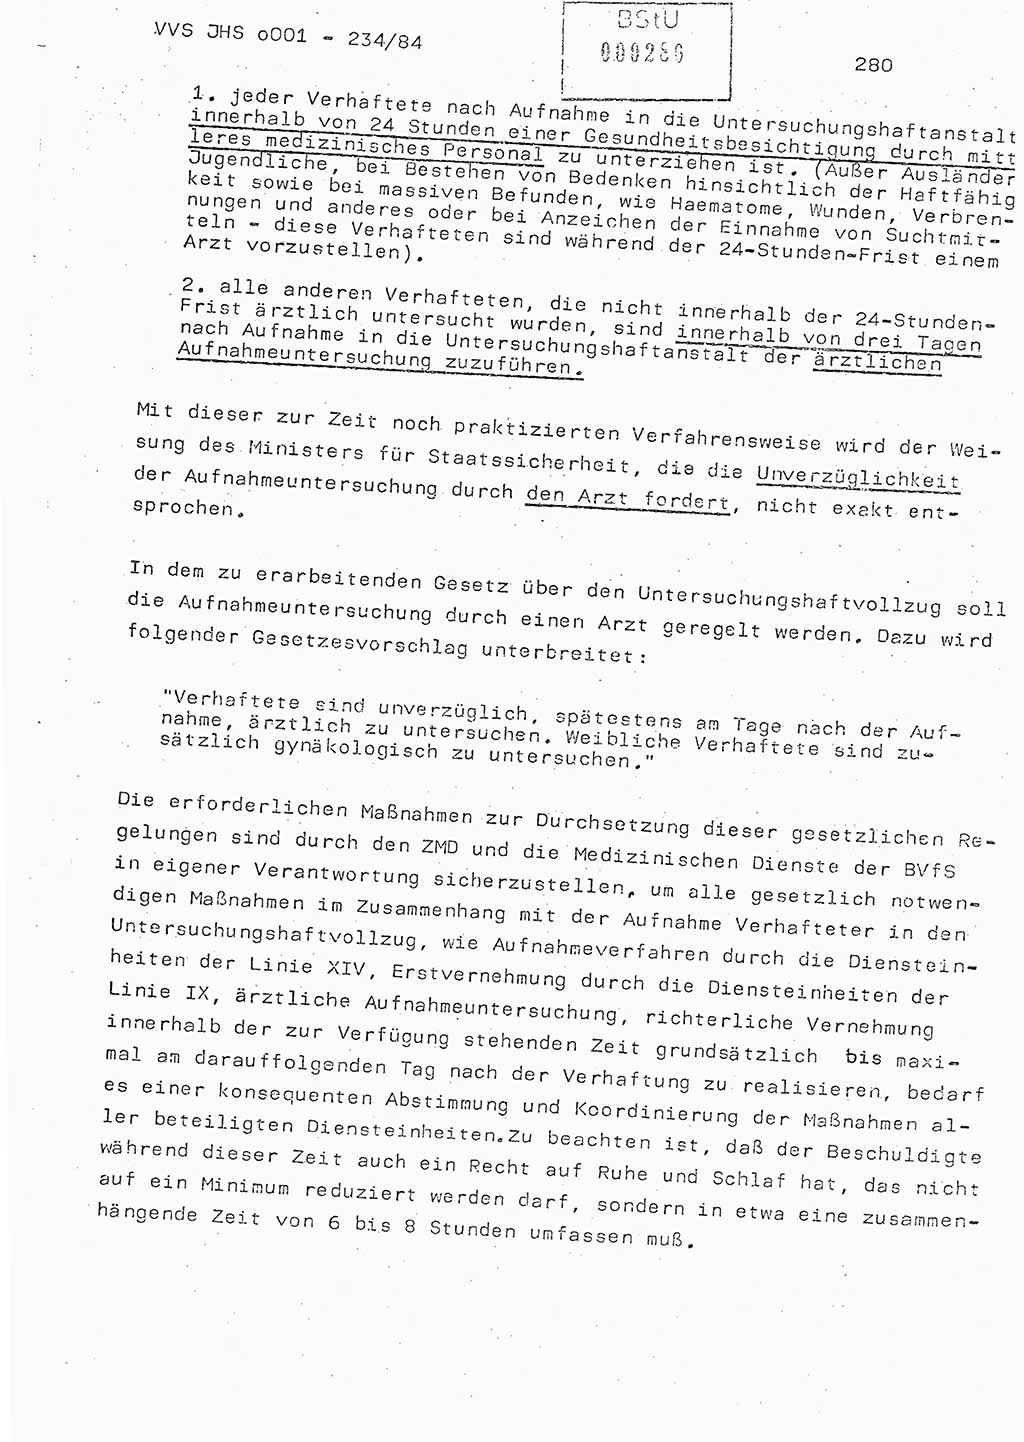 Dissertation Oberst Siegfried Rataizick (Abt. ⅩⅣ), Oberstleutnant Volkmar Heinz (Abt. ⅩⅣ), Oberstleutnant Werner Stein (HA Ⅸ), Hauptmann Heinz Conrad (JHS), Ministerium für Staatssicherheit (MfS) [Deutsche Demokratische Republik (DDR)], Juristische Hochschule (JHS), Vertrauliche Verschlußsache (VVS) o001-234/84, Potsdam 1984, Seite 280 (Diss. MfS DDR JHS VVS o001-234/84 1984, S. 280)